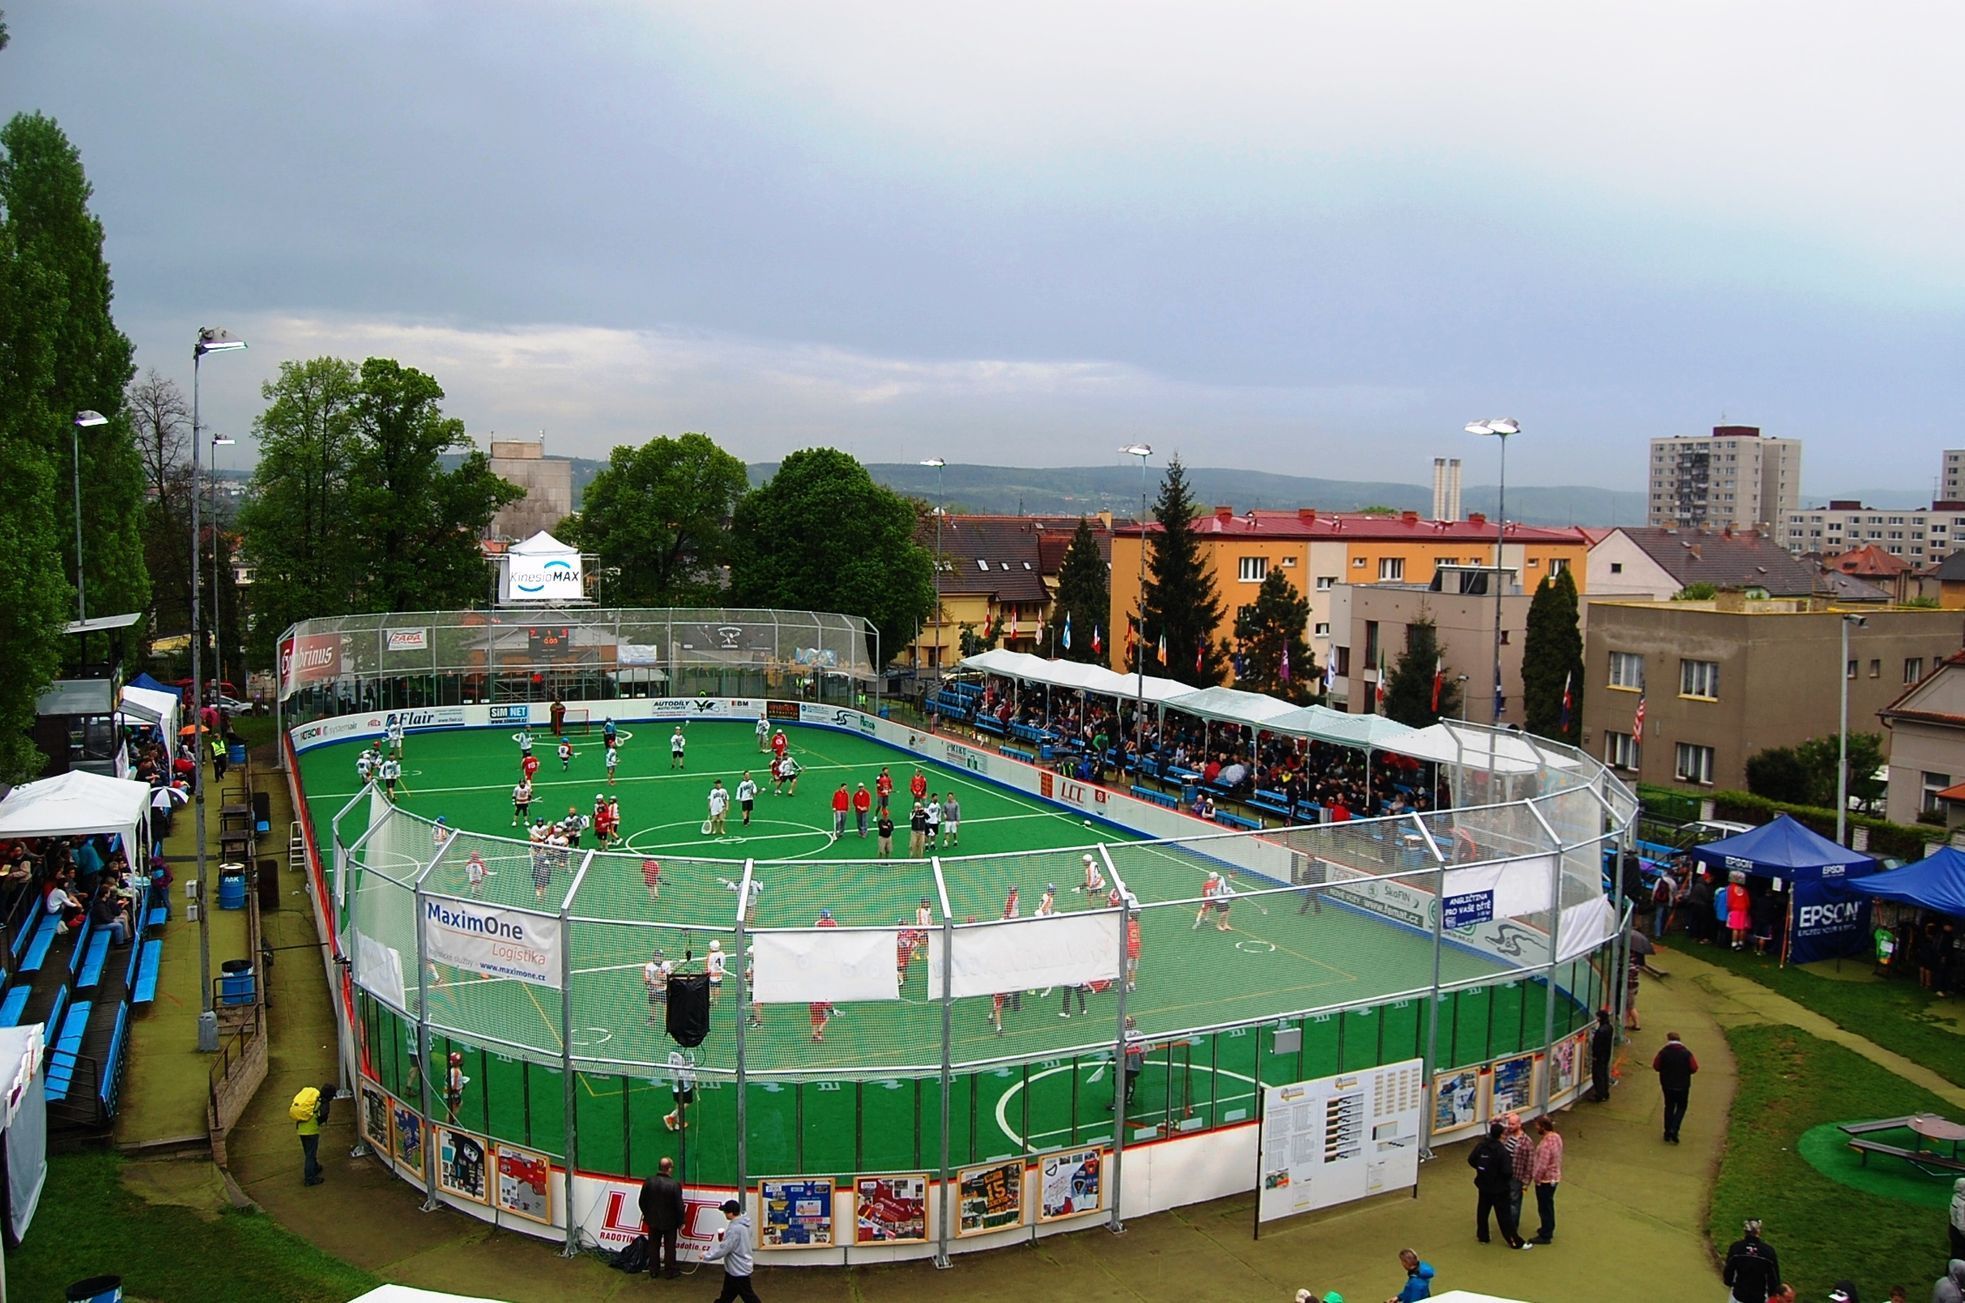 Memoriál Aleše Hřebeského v Radotíně 2014 (box-lacrosse)